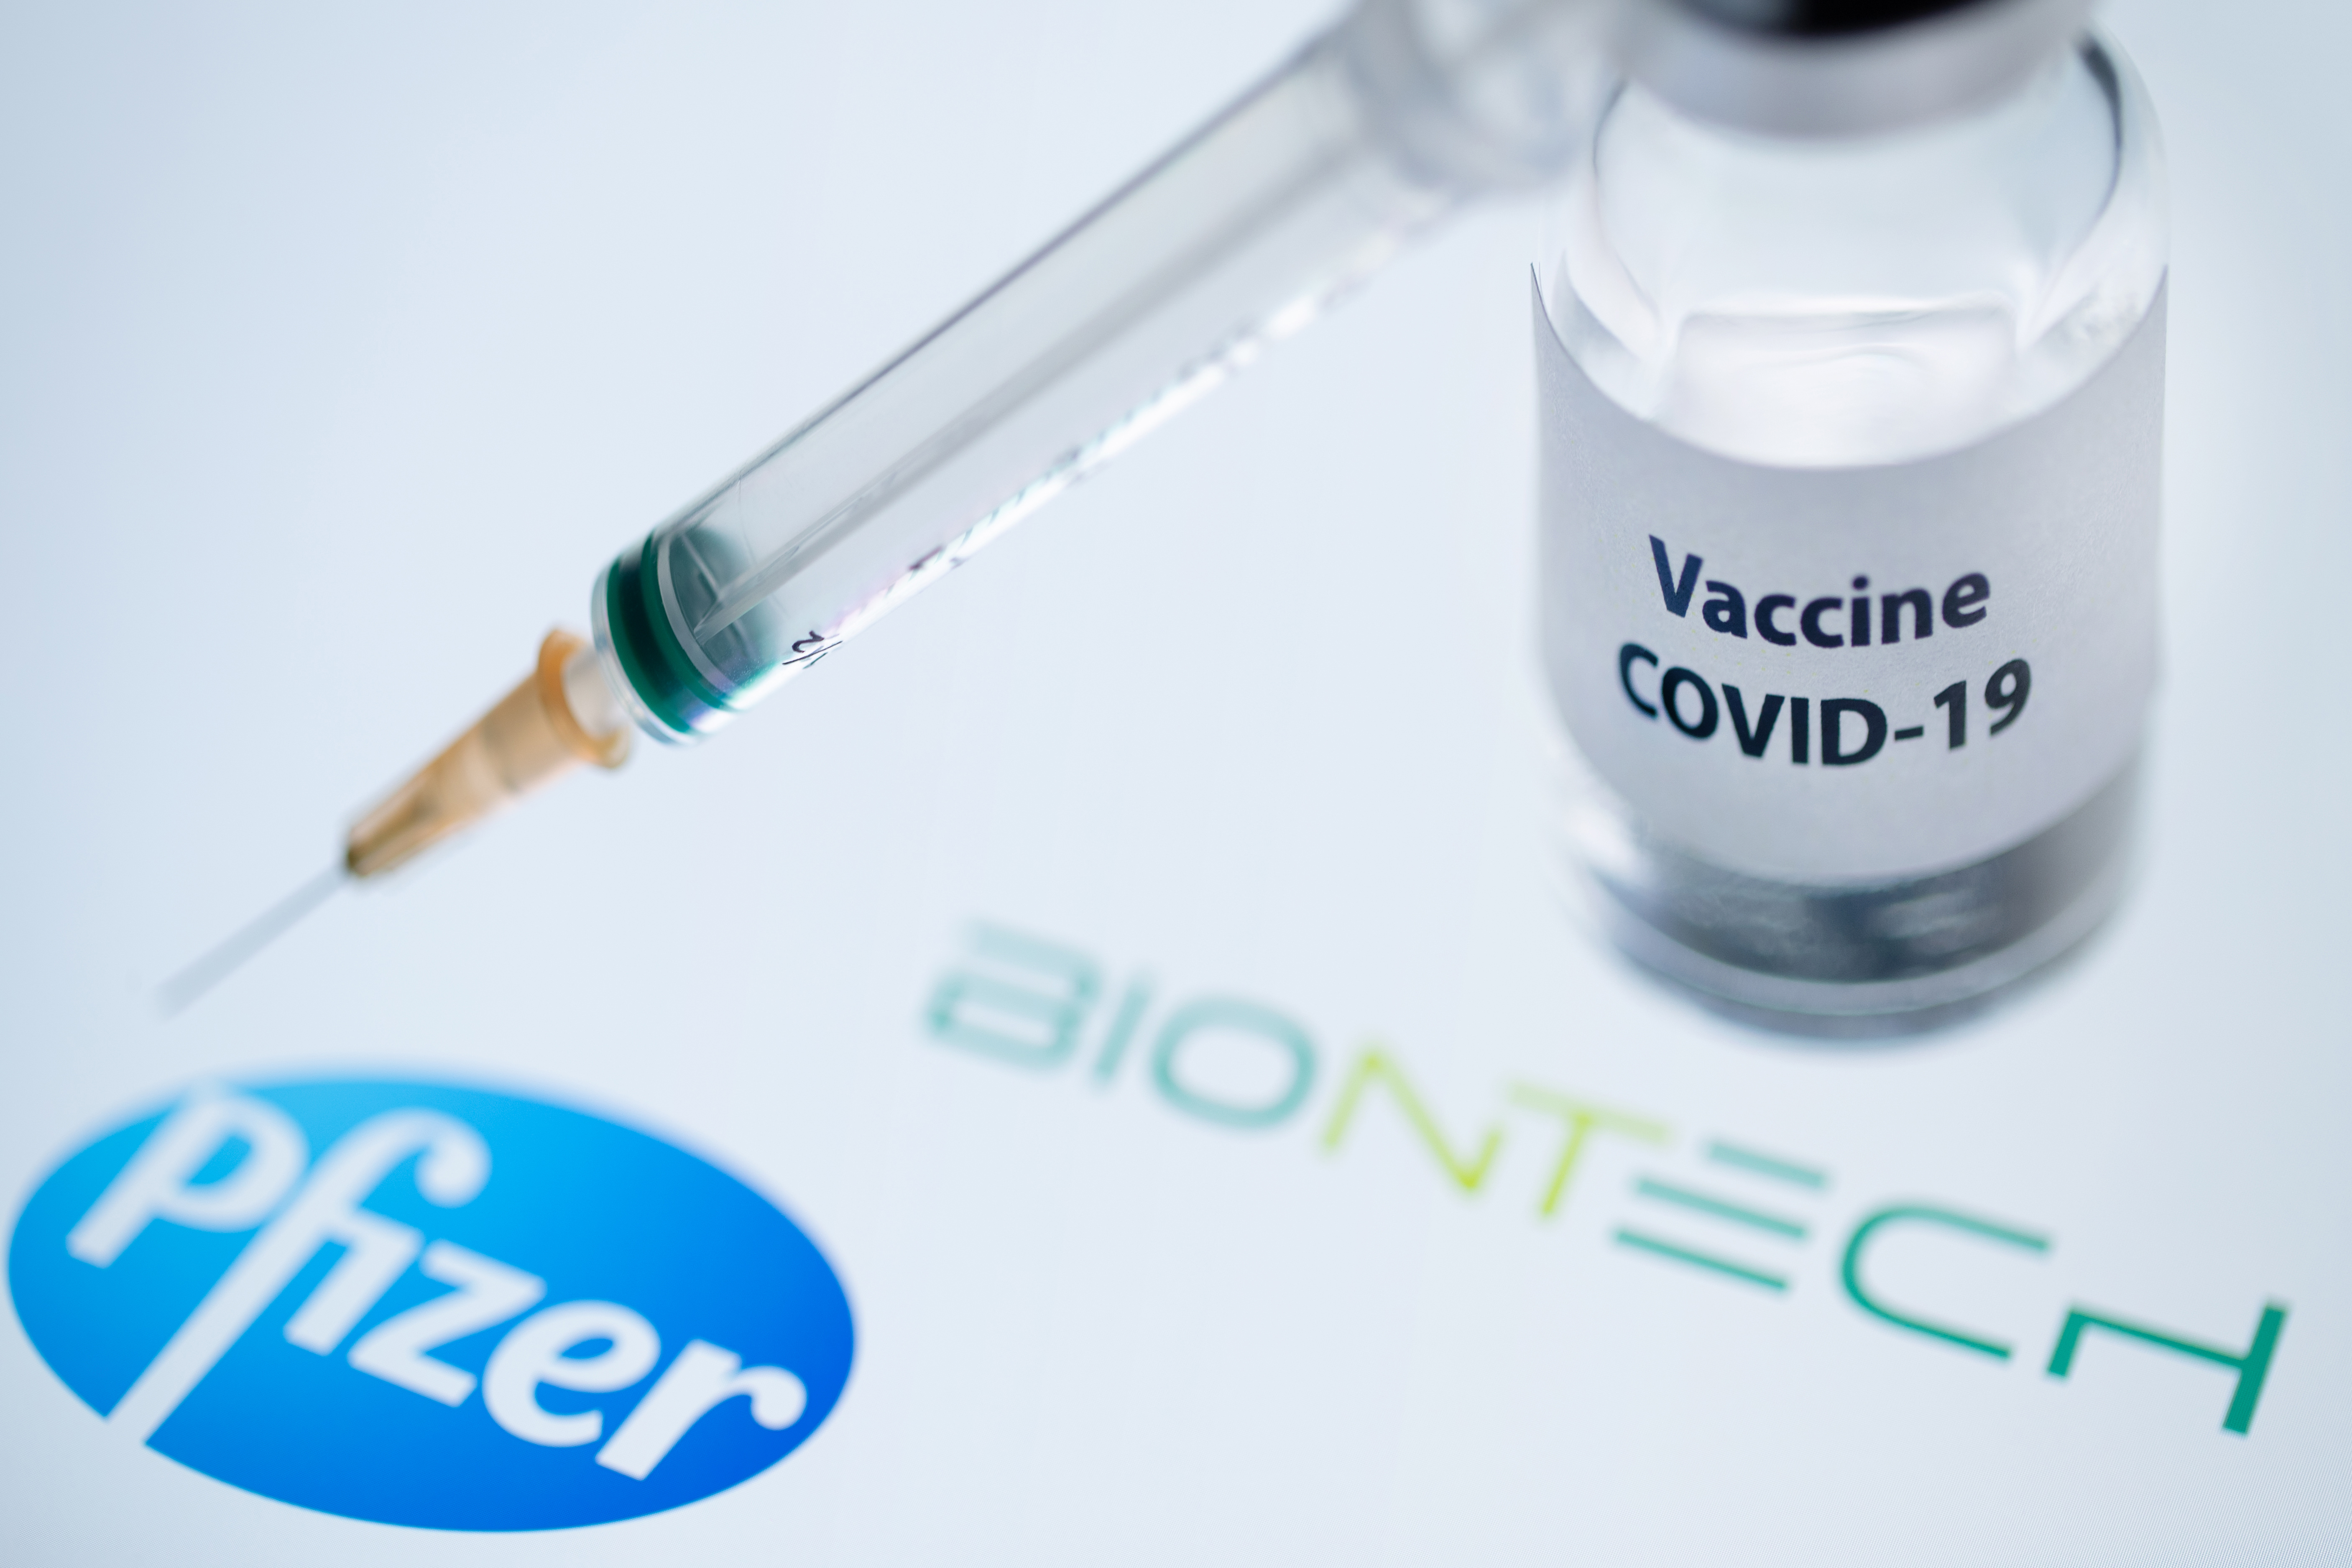 El Reino Unido defiende su rapidez en autorizar la vacuna de Pfizer/BioNTech